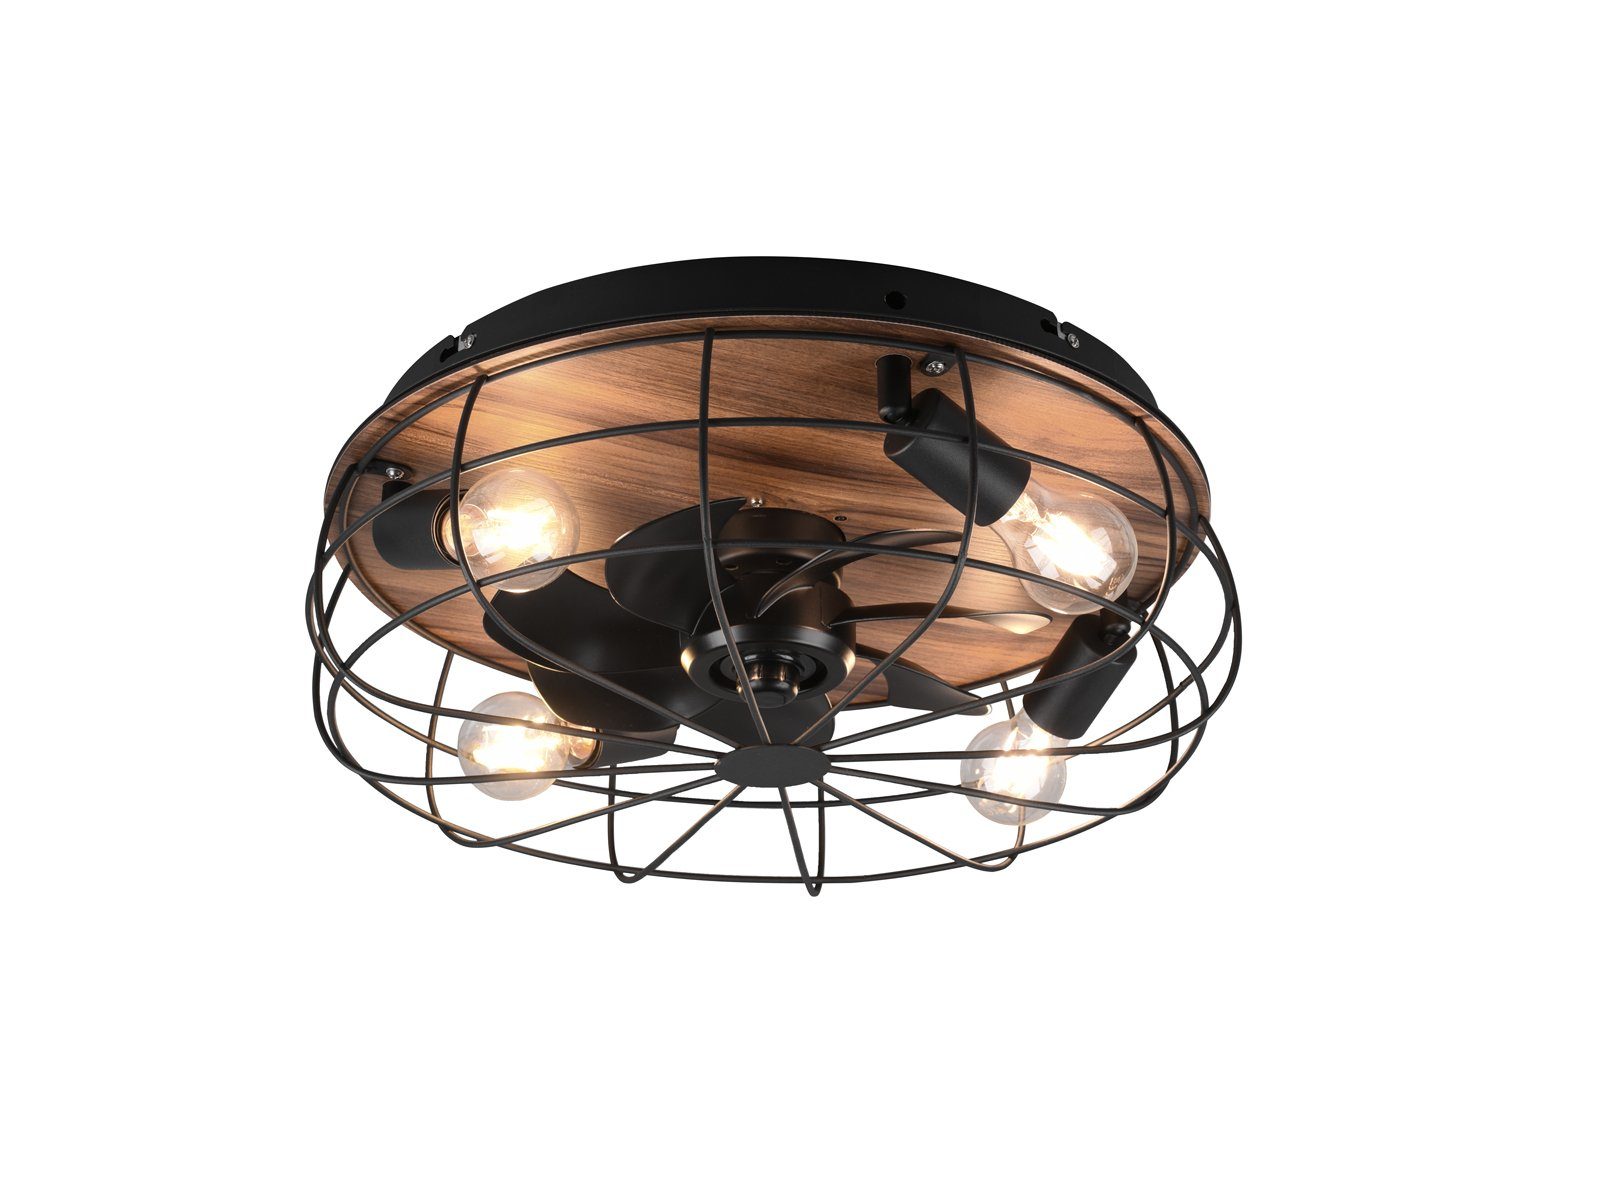 Holz-lampe LED Holzdekor - Ø48,5cm Licht, Schwarz matt Deckenleuchte, mit meineWunschleuchte Decke, Deckenlüfter Warmweiß, Deckenventilator-en wechselbar, LED